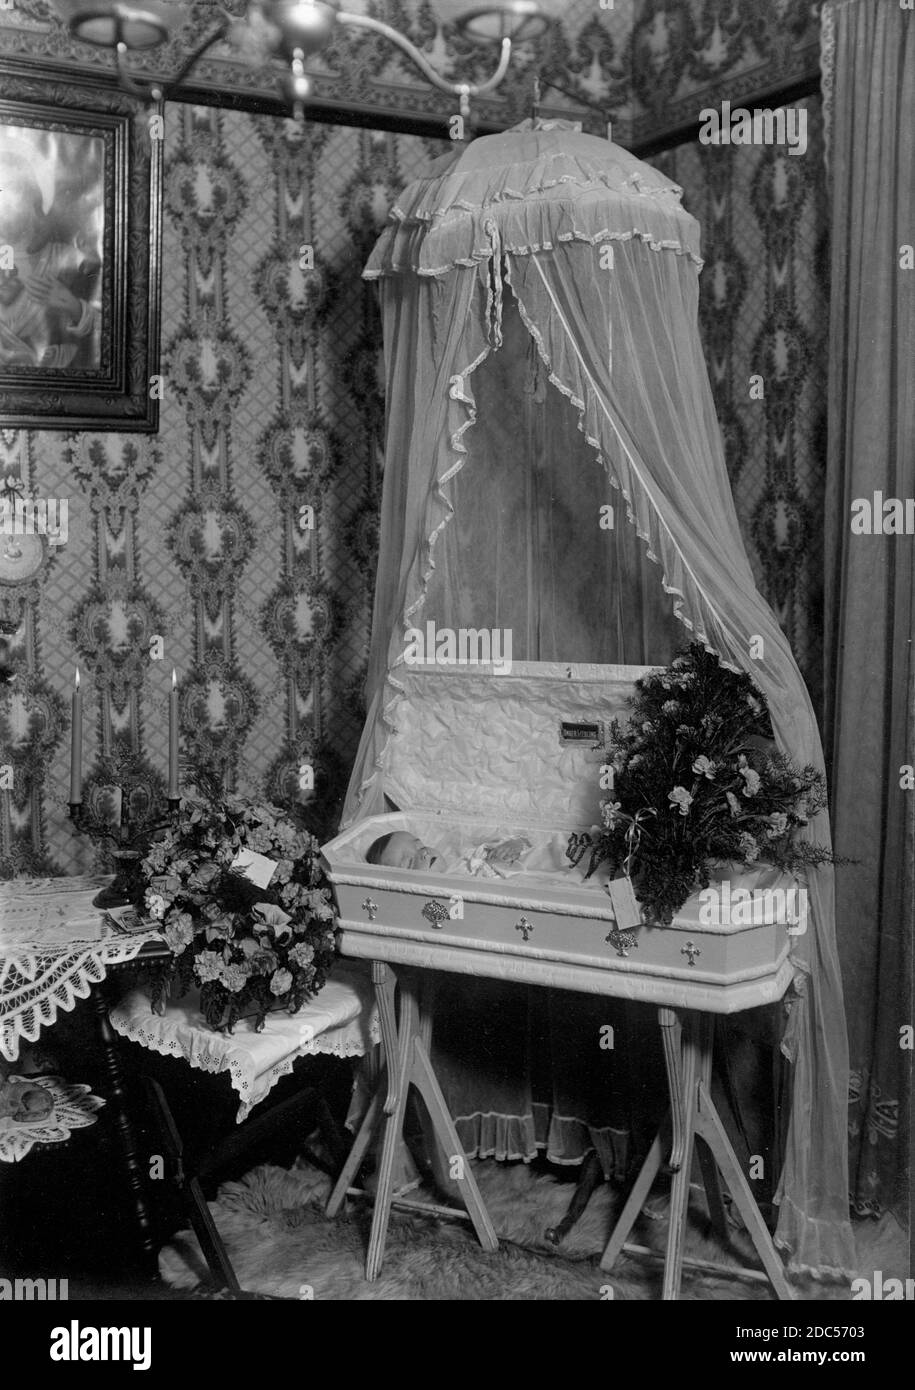 Un petit bébé décédé se trouve dans un cercueil blanc joliment décoré de la taille d'un enfant, vers 1920. Le cercueil est exposé sous une toile blanche de fantaisie suspendue au plafond. Tout cela est présenté dans le coin de la maison de l'enfant, probablement un salon au rez-de-chaussée. À l'intérieur du couvercle du cercueil se trouve une petite plaque en allemand, « Unser Liebling », qui signifie « Our Darling ». La housse repose sur une paire de pieds de trépied spéciaux. Pour voir mes enfants-liés des images vintage, recherche: Prestor vintage Kids Banque D'Images